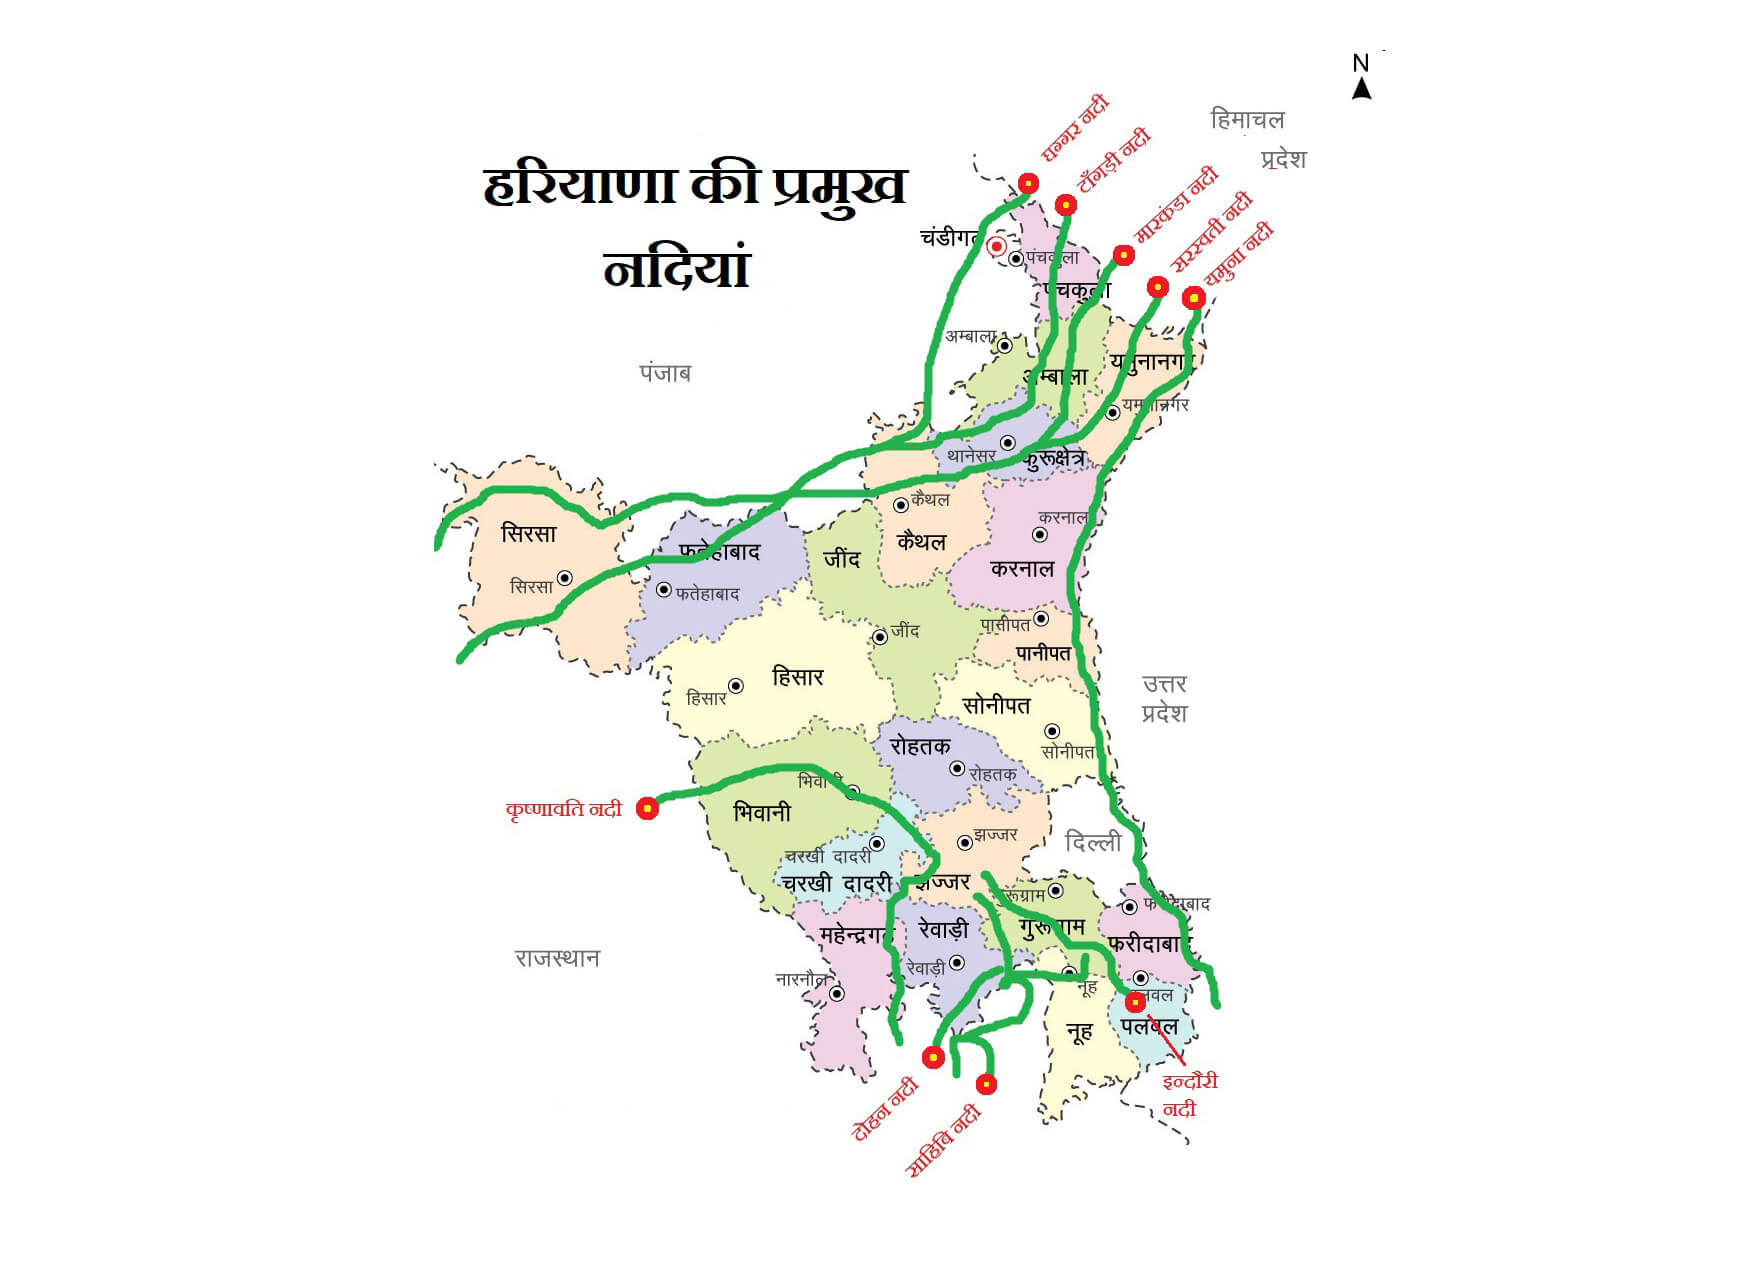 हरियाणा की प्रमुख नदियां (River of Haryana)